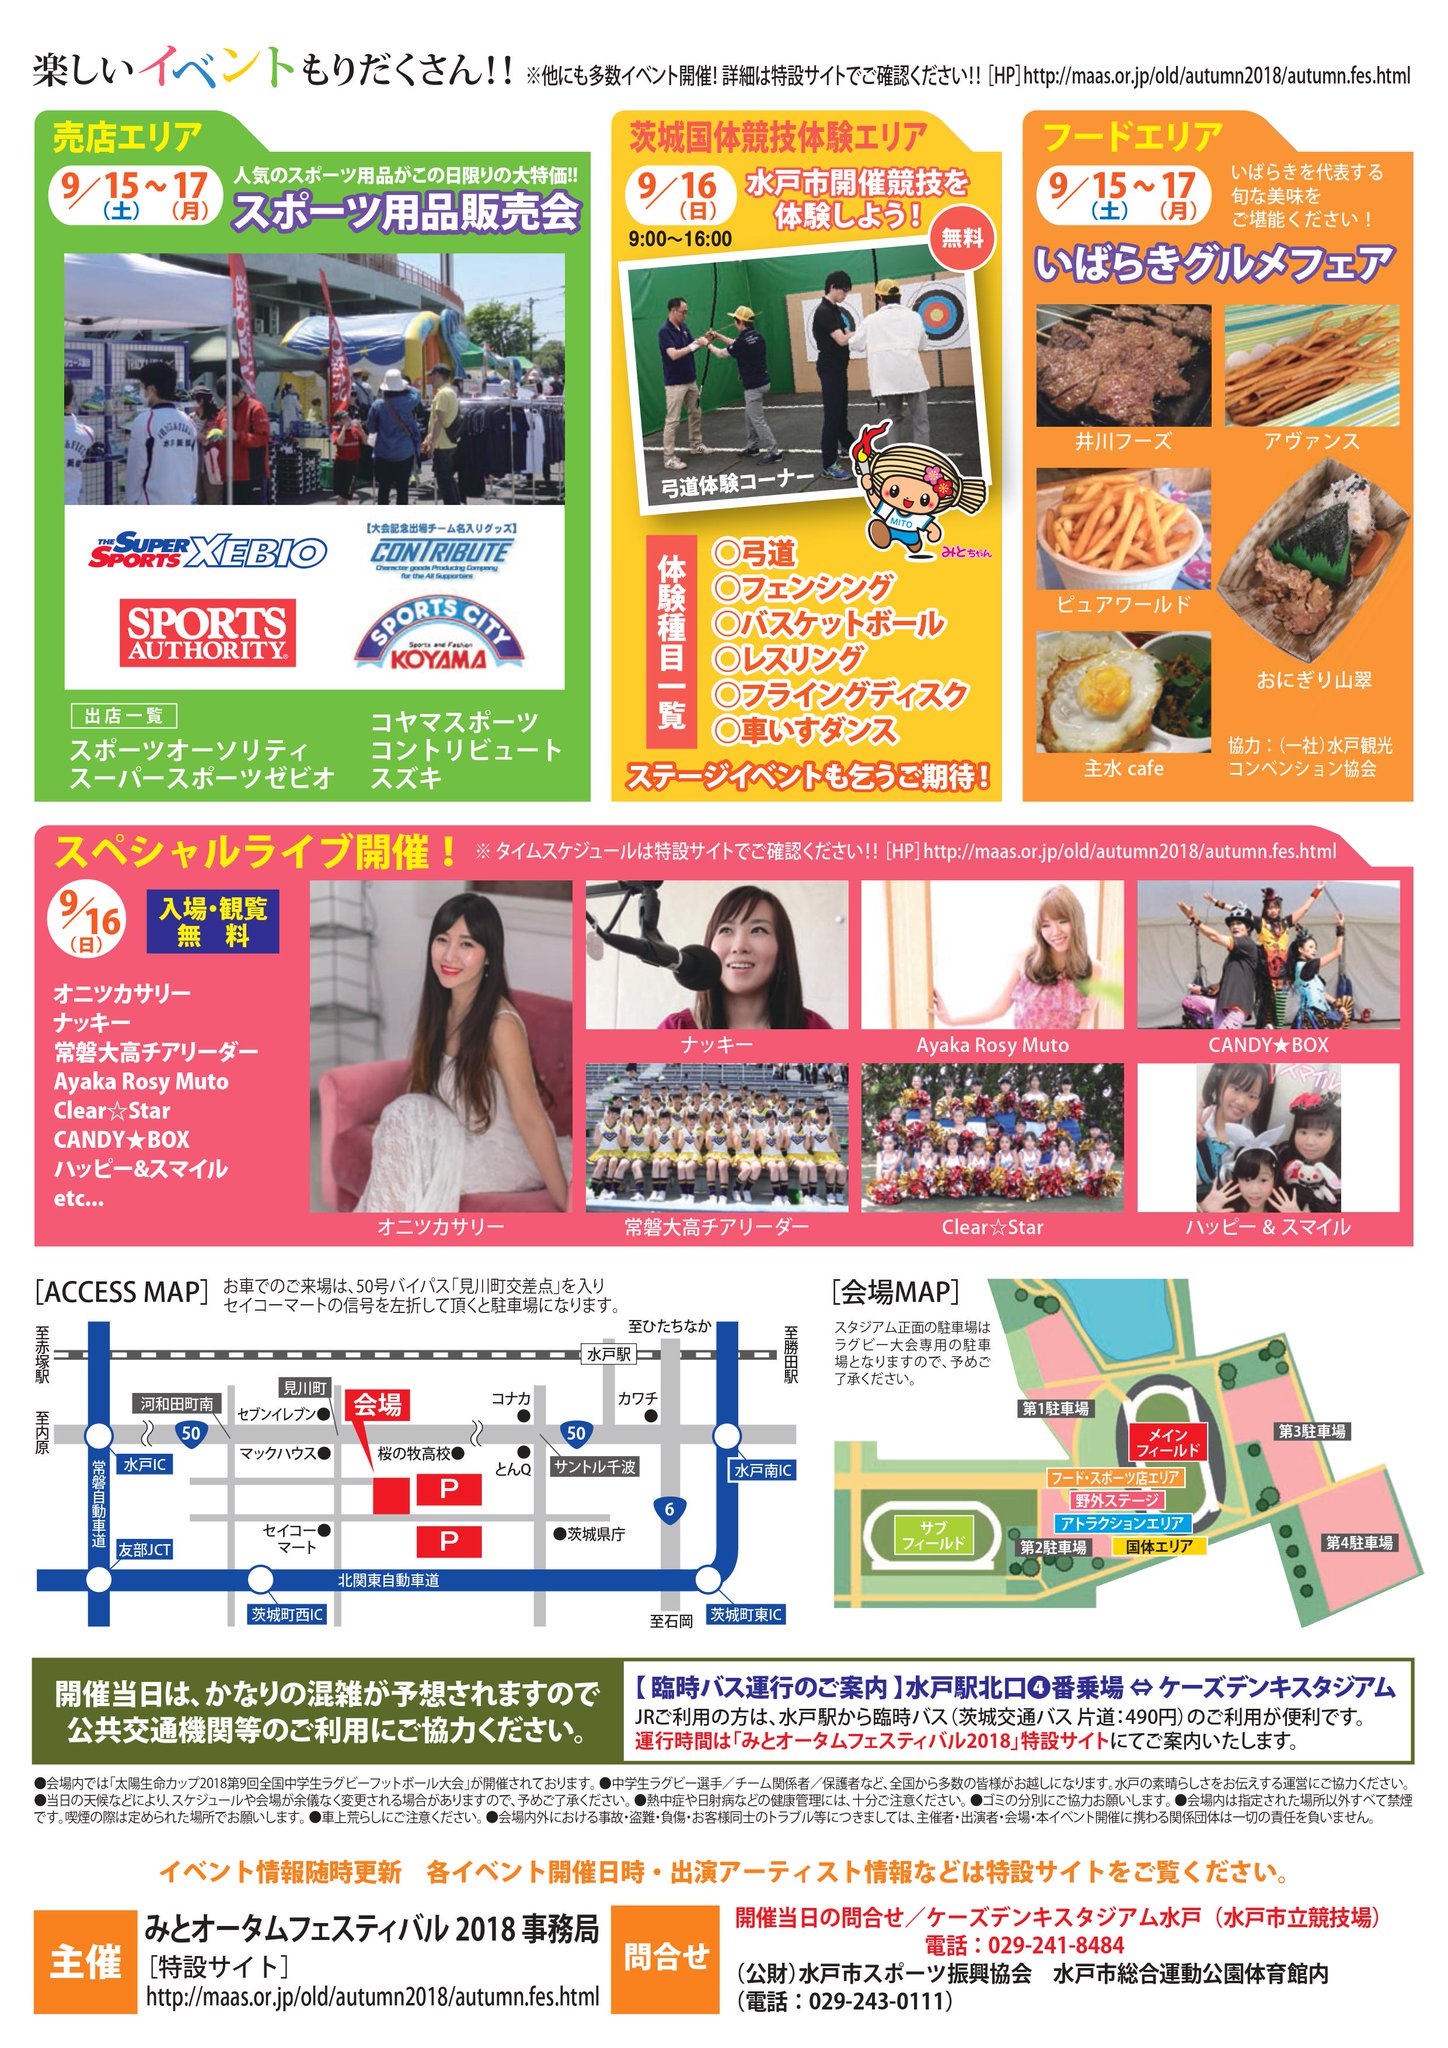 水戸市スポーツ振興協会 on Twitter "みとオータムフェスティバル2018いよいよ開催！！今年のストラック